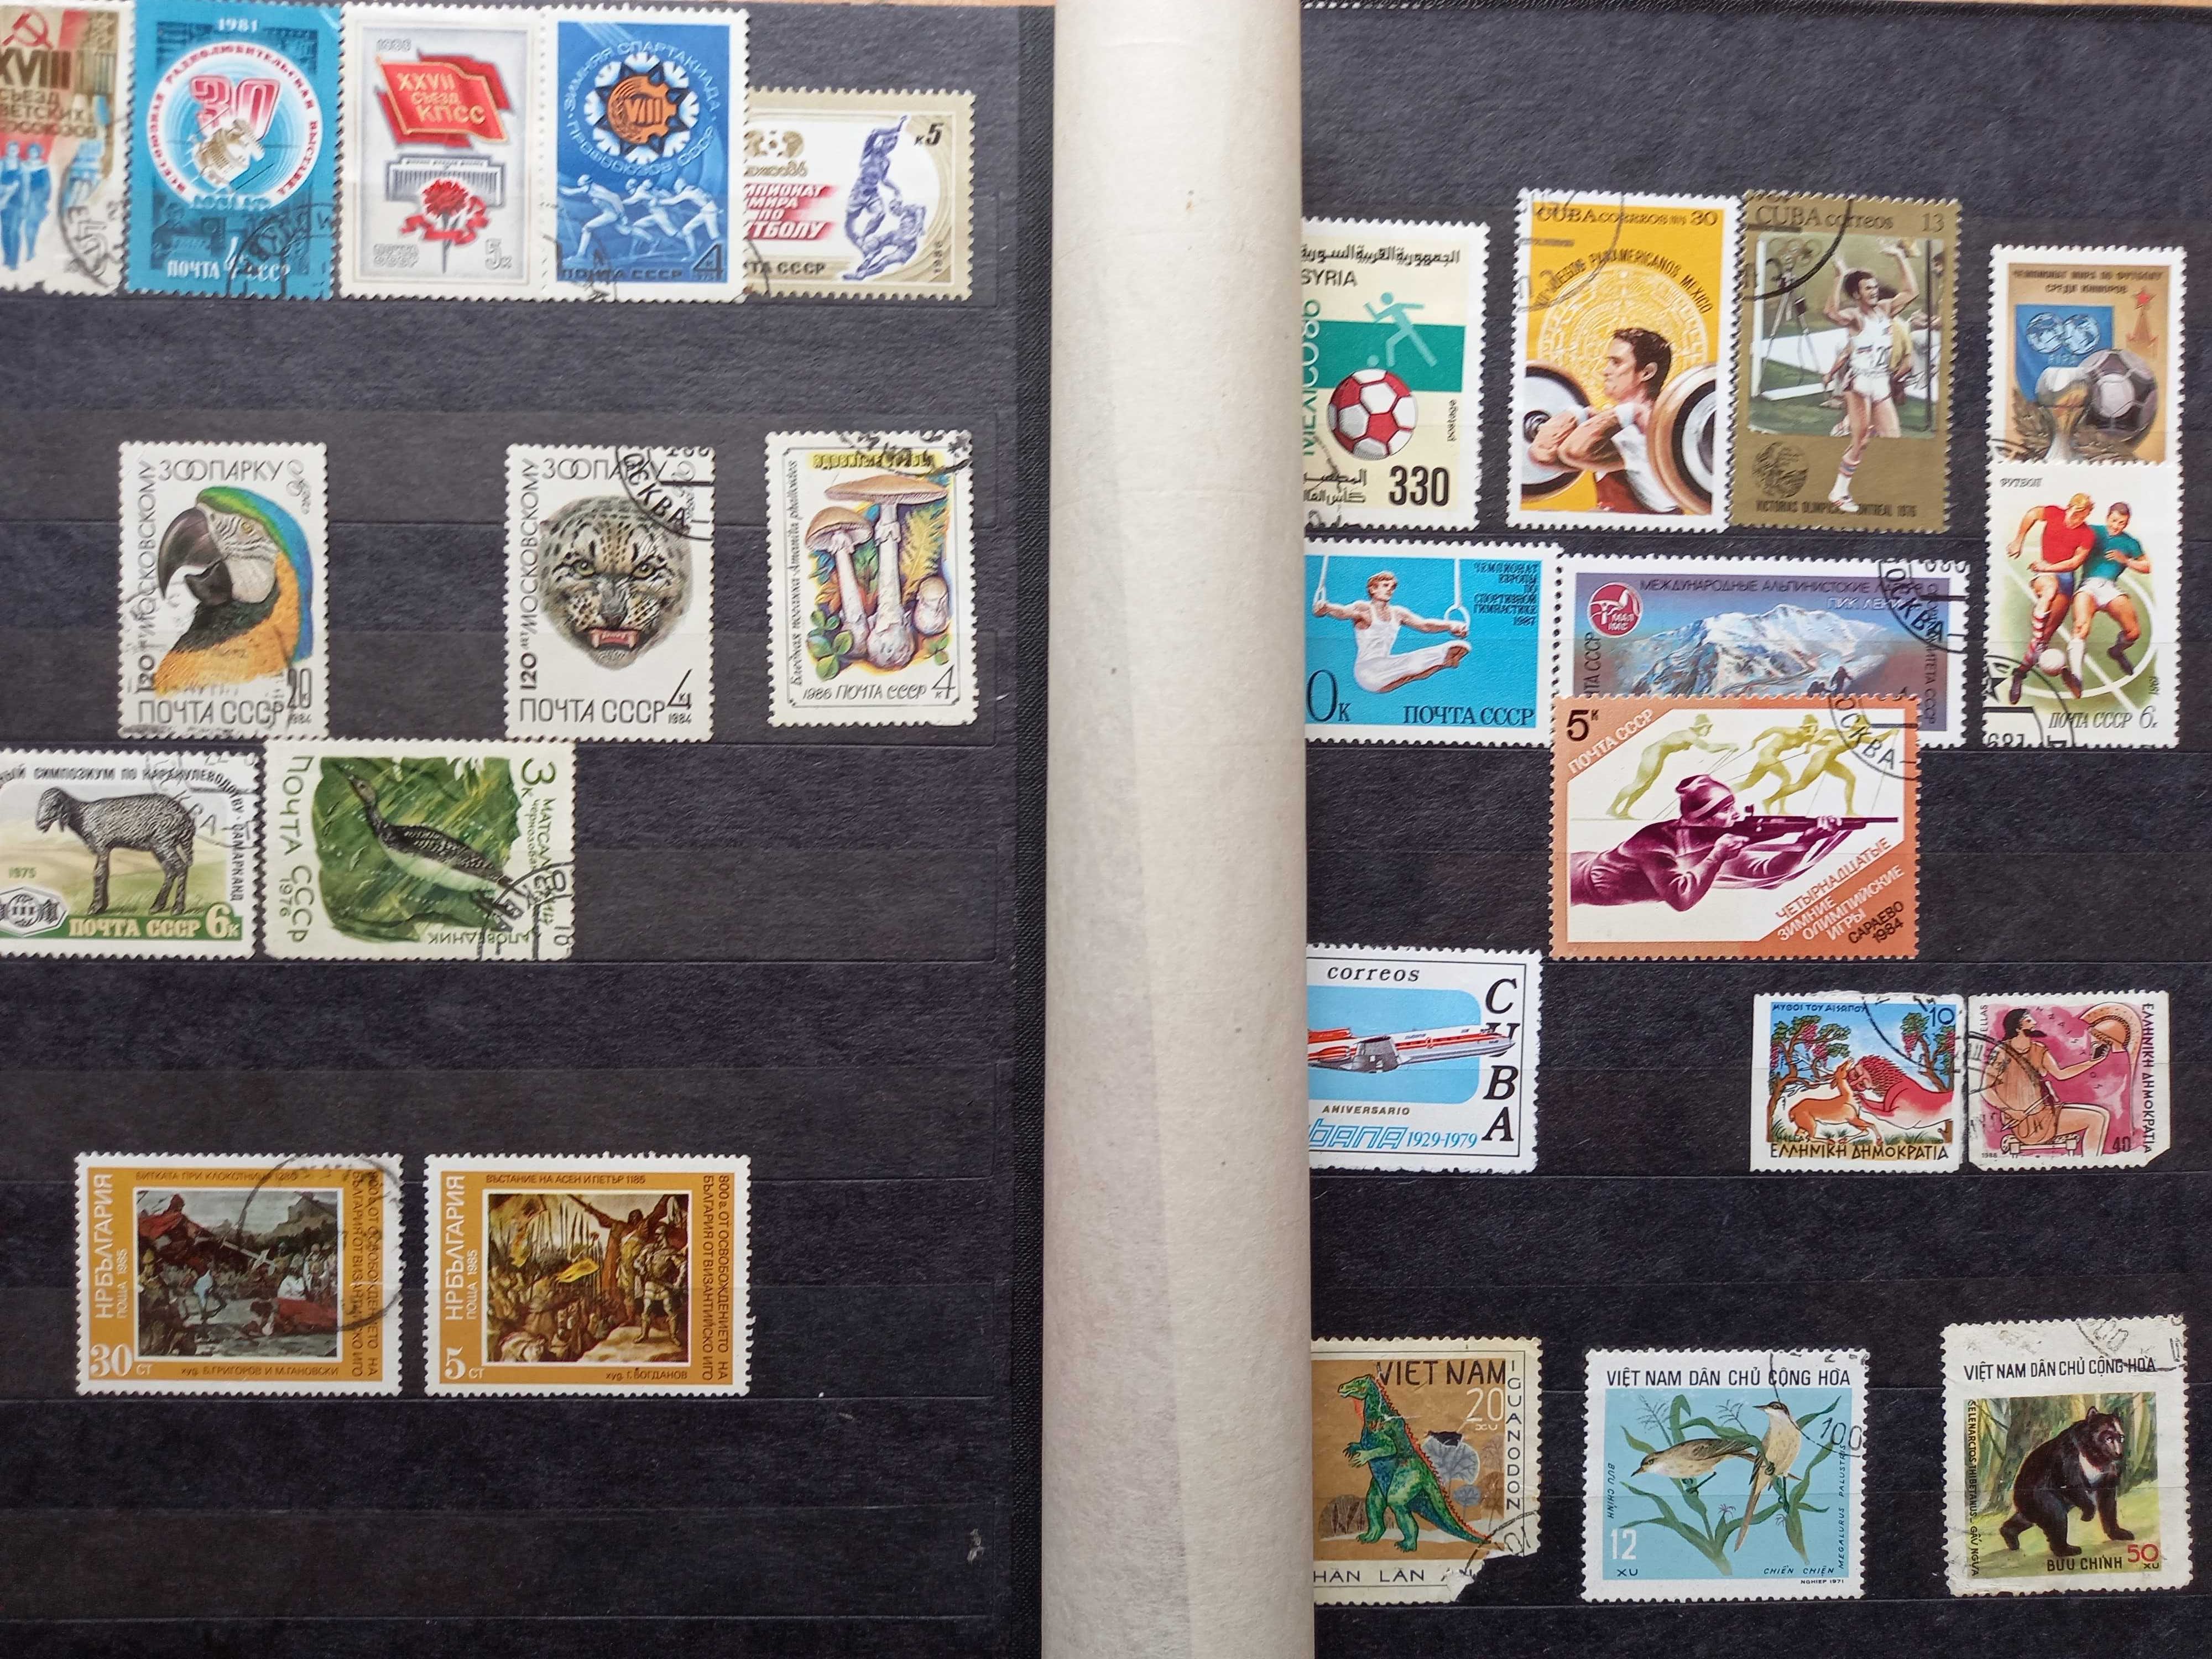 Колекция пощенски марки около 200 бр.